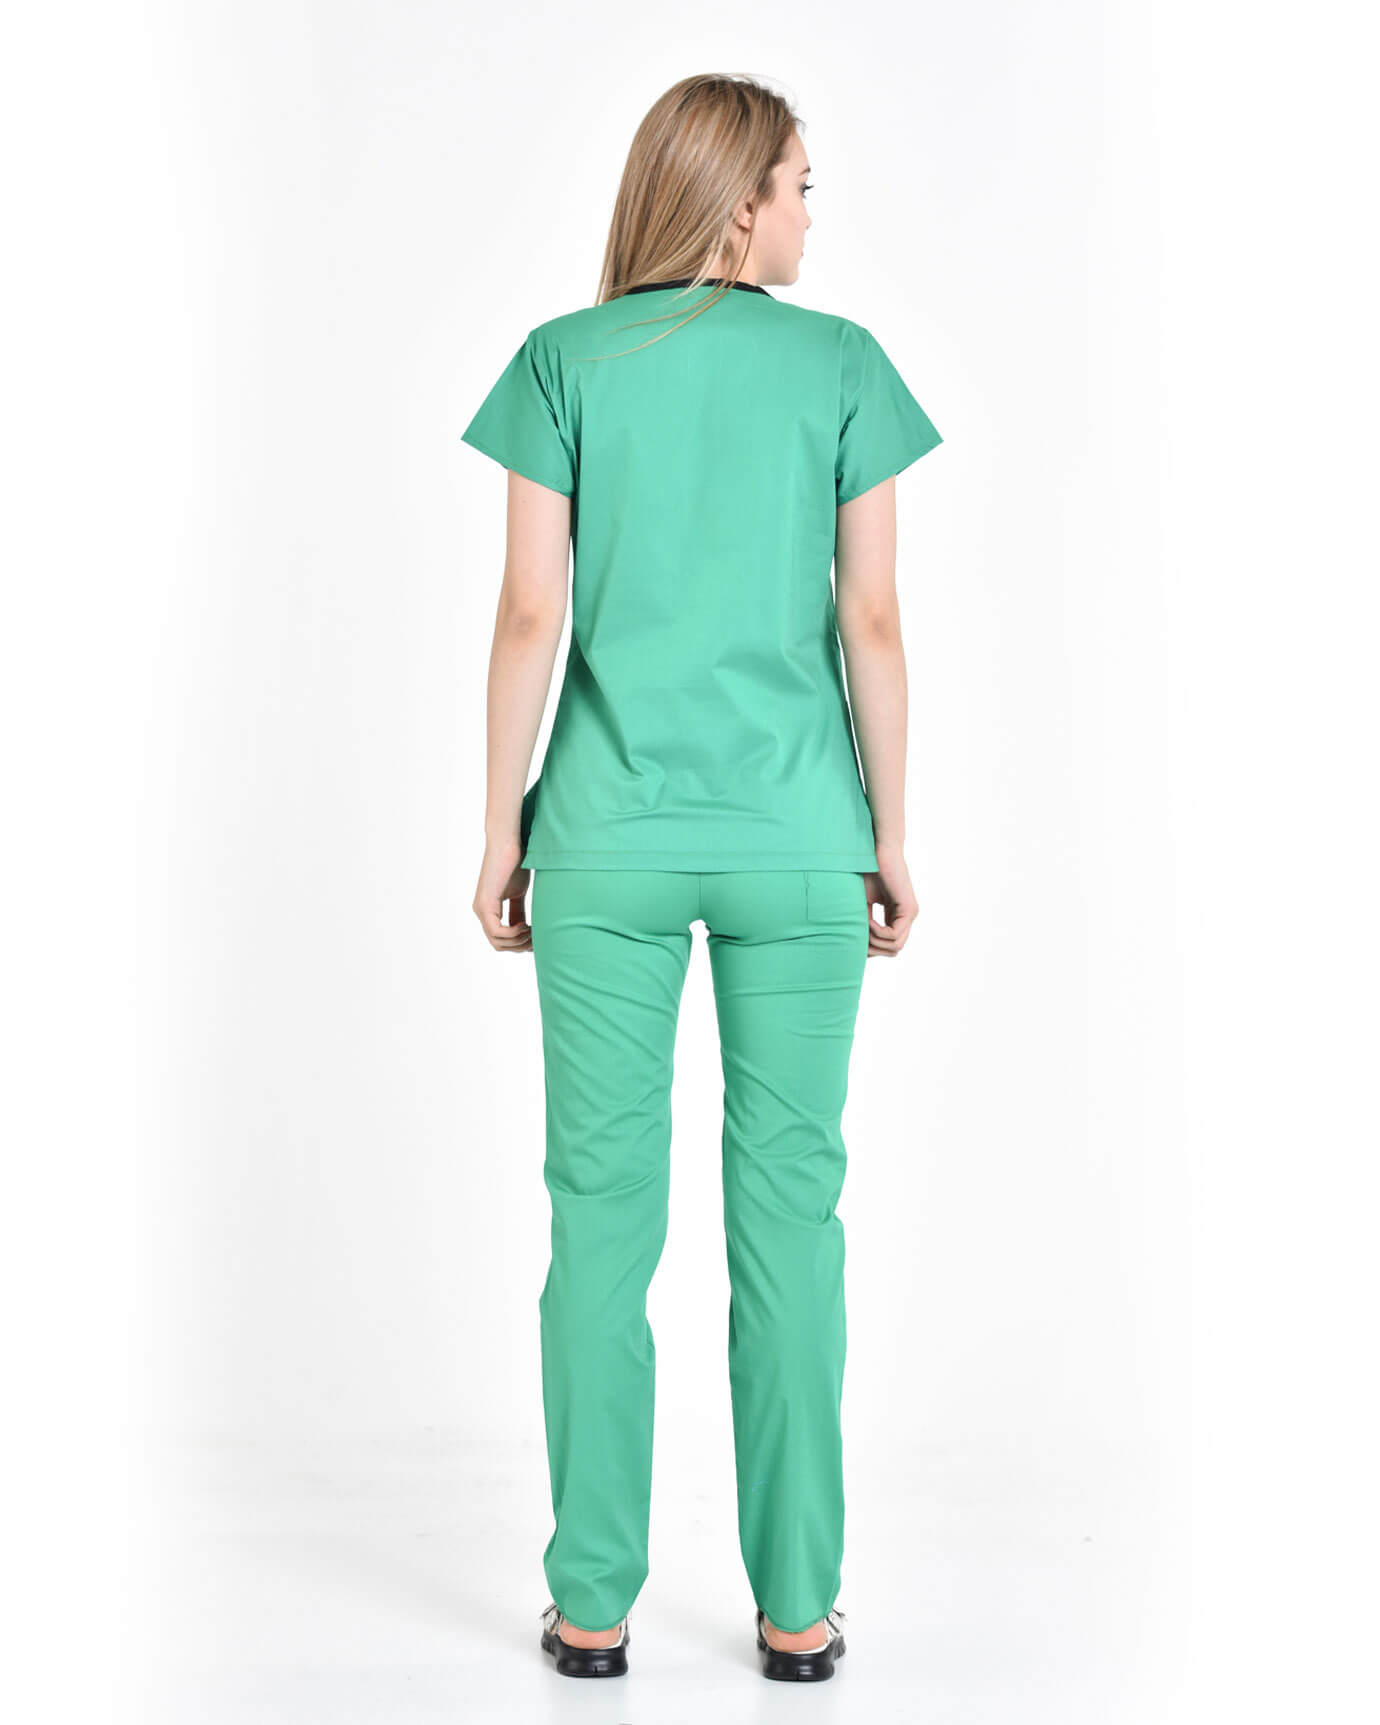 Kadın %100 Pamuk Likralı Benetton Yeşili Doktor ve Hemşire Forması Takımı